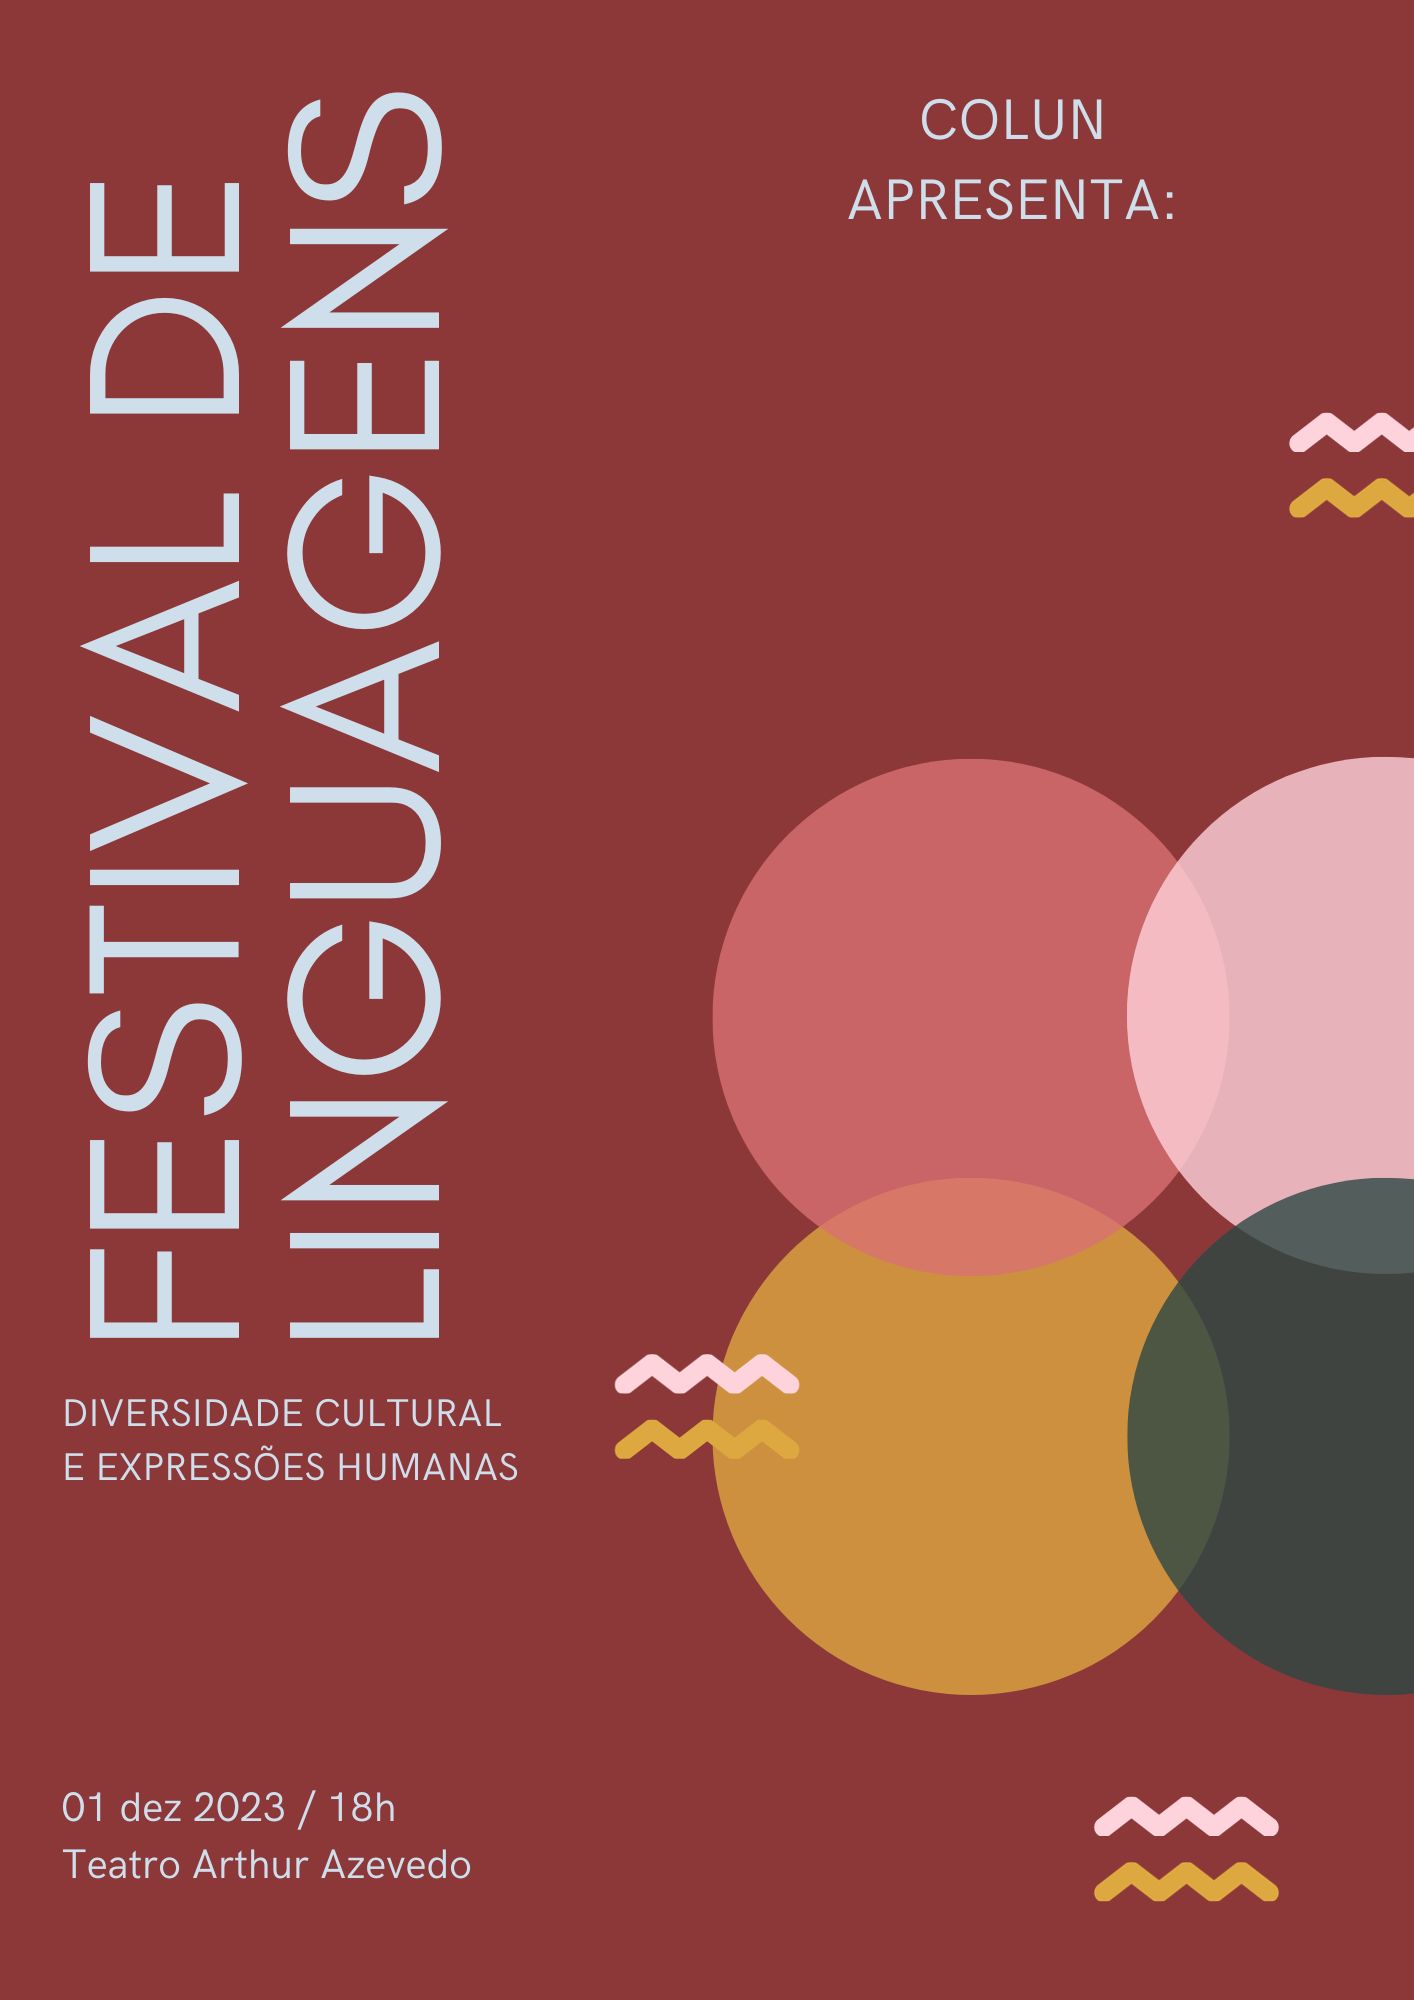 Colun da UFMA apresenta Festival de Linguagens no Teatro Arthur Azevedo nessa sexta-feira, 01